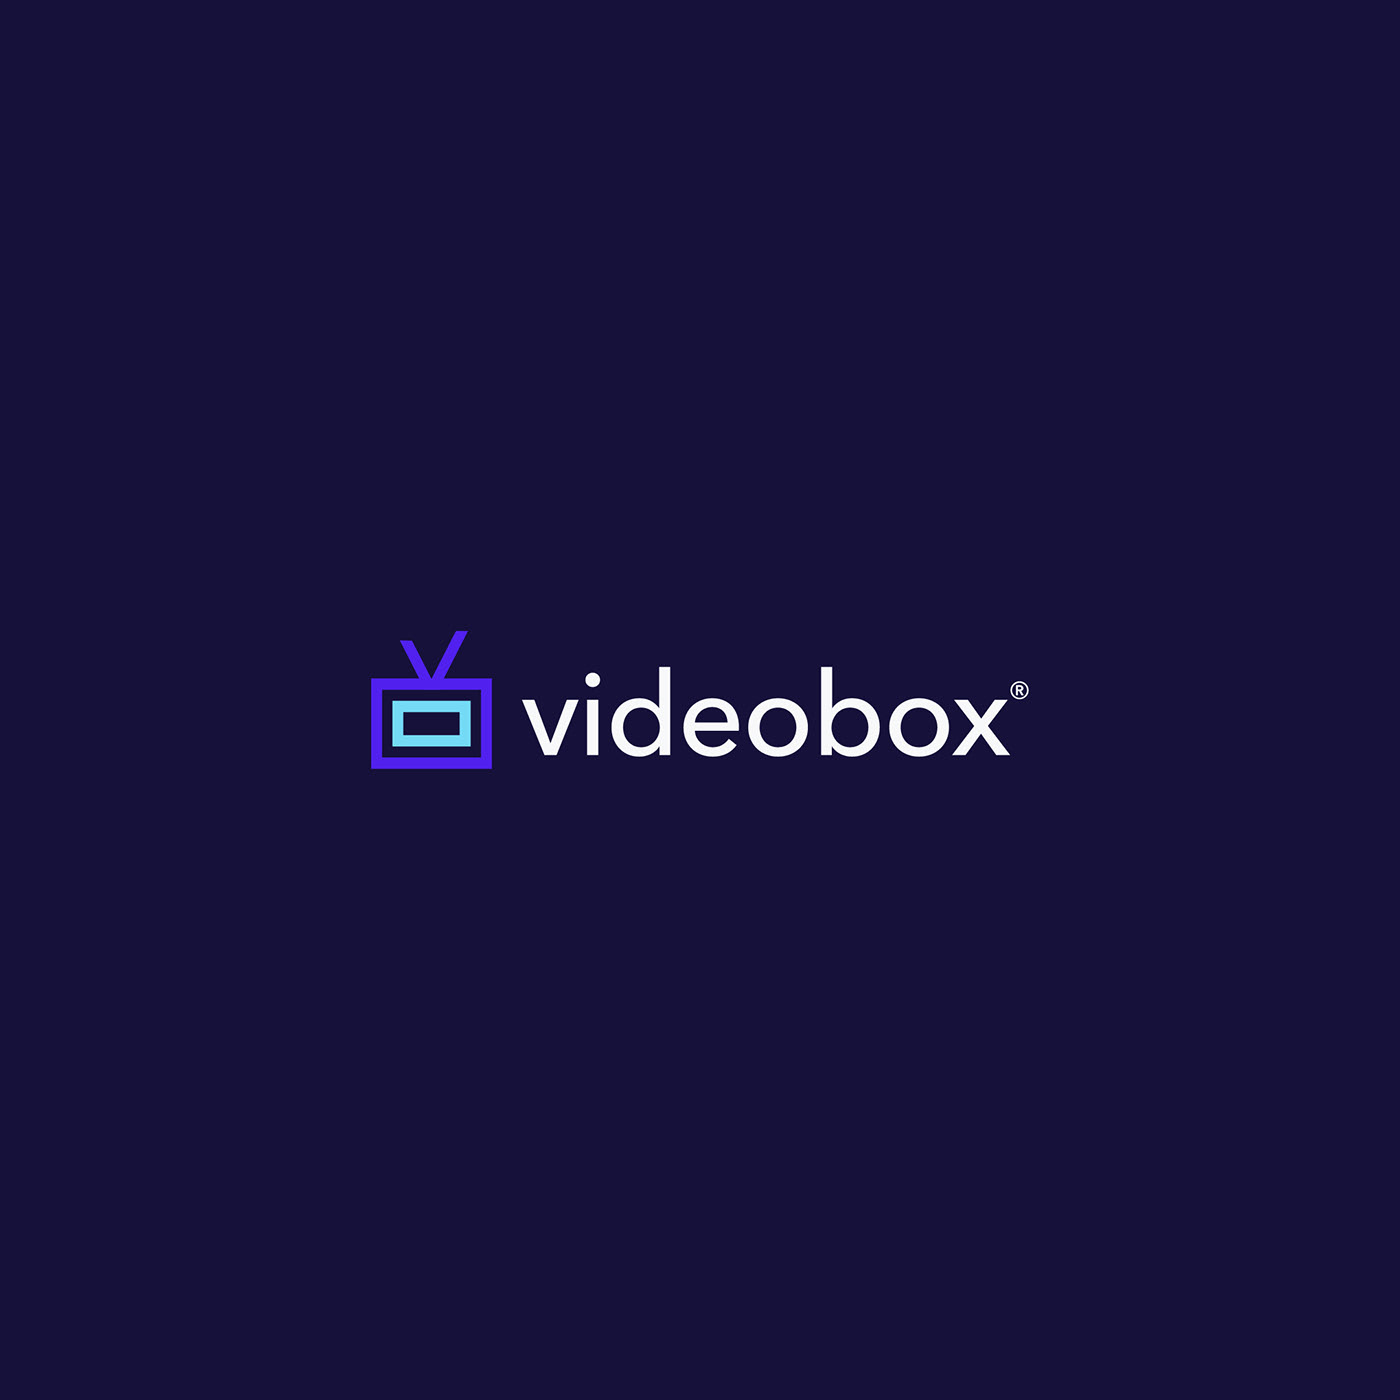 videobox brand identity on Behance